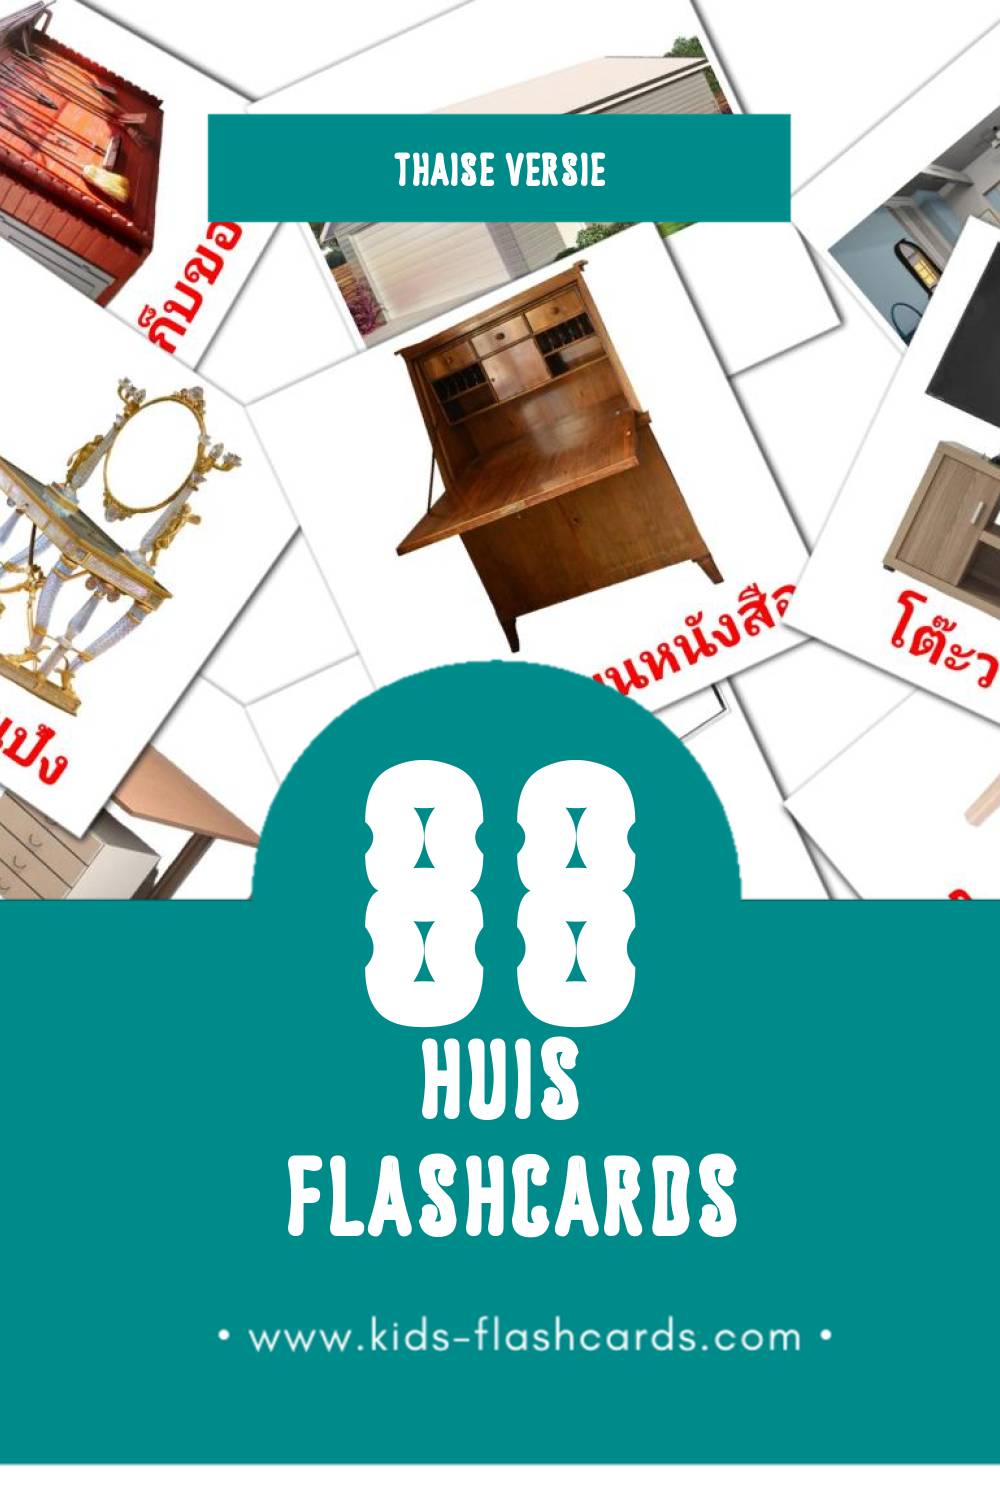 Visuele บ้าน Flashcards voor Kleuters (88 kaarten in het Thais)